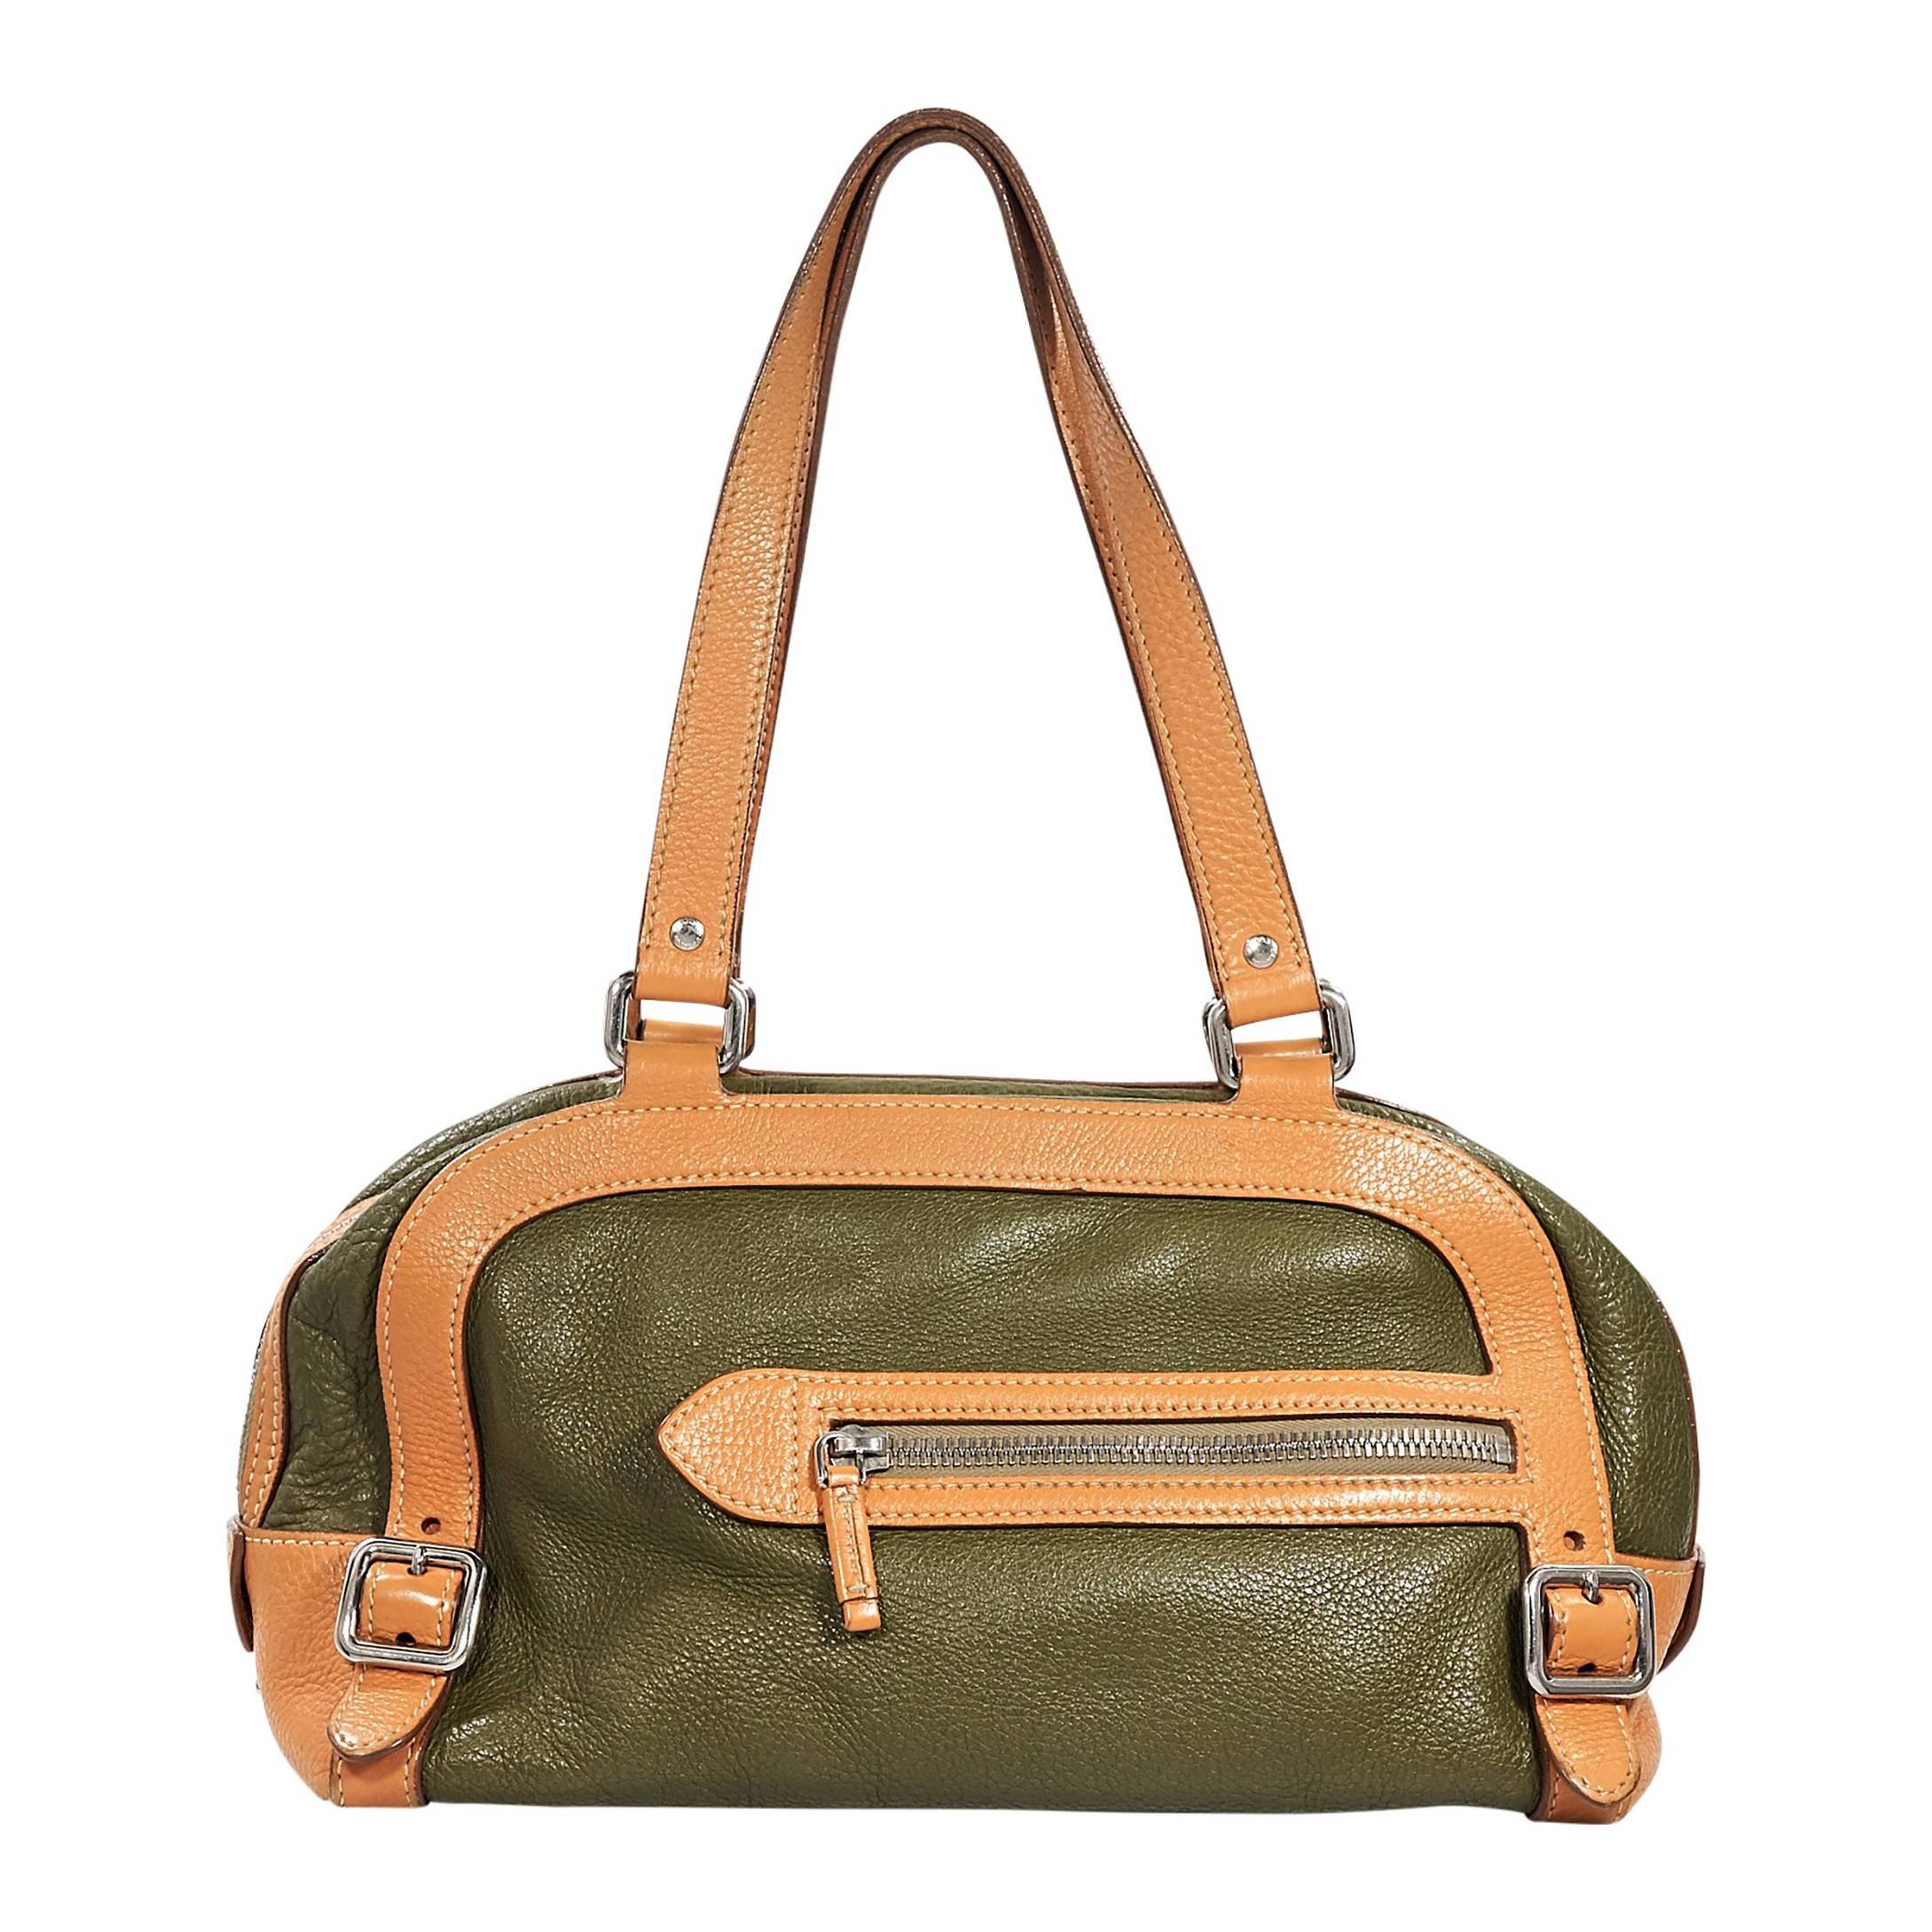 Green & Tan Prada Leather Shoulder Bag